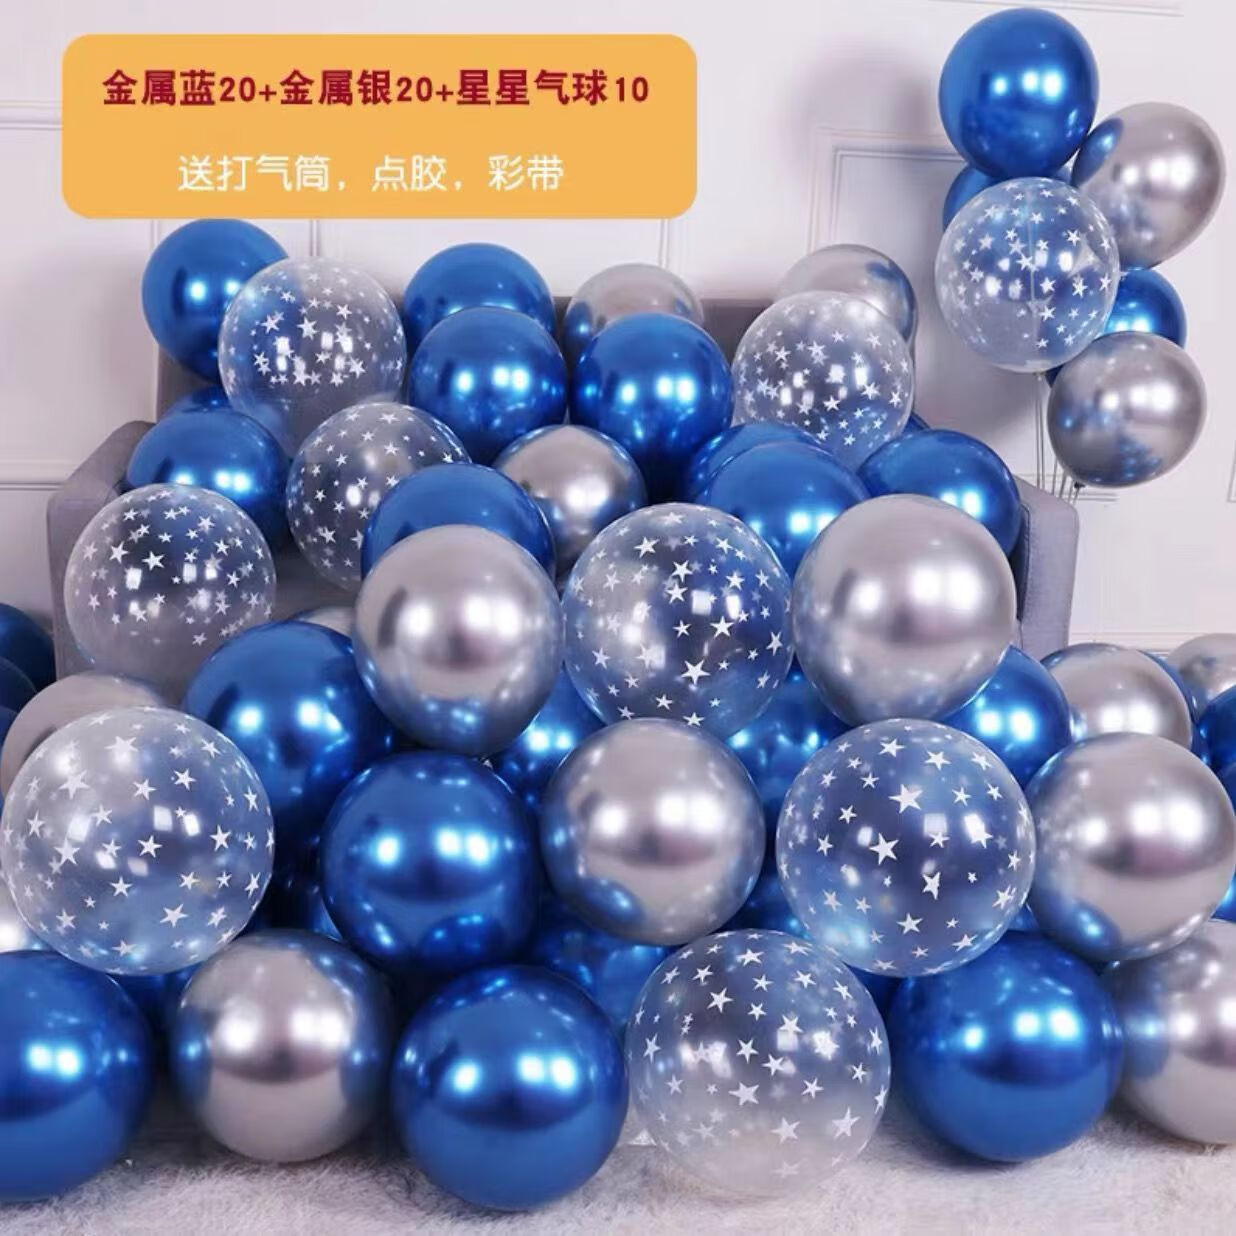 映棠求婚布置室内 简易浪漫蓝色调生日气球派对满天星透明印花气球结 透明星星+银+蓝 52个送打气筒丝带点胶